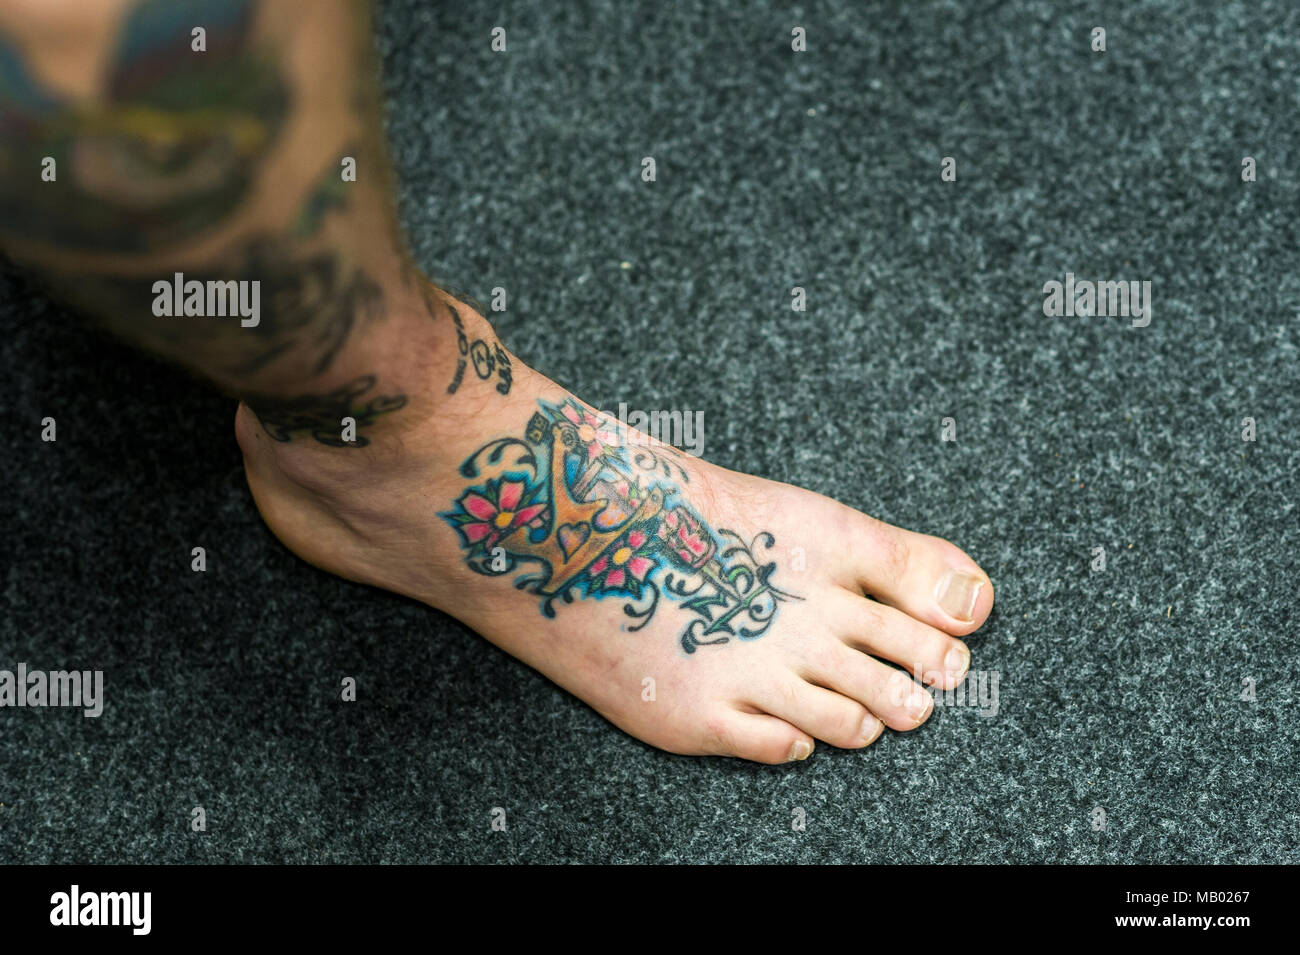 Un design coloré tatoué sur le cou-de-pied d'un pied. Banque D'Images